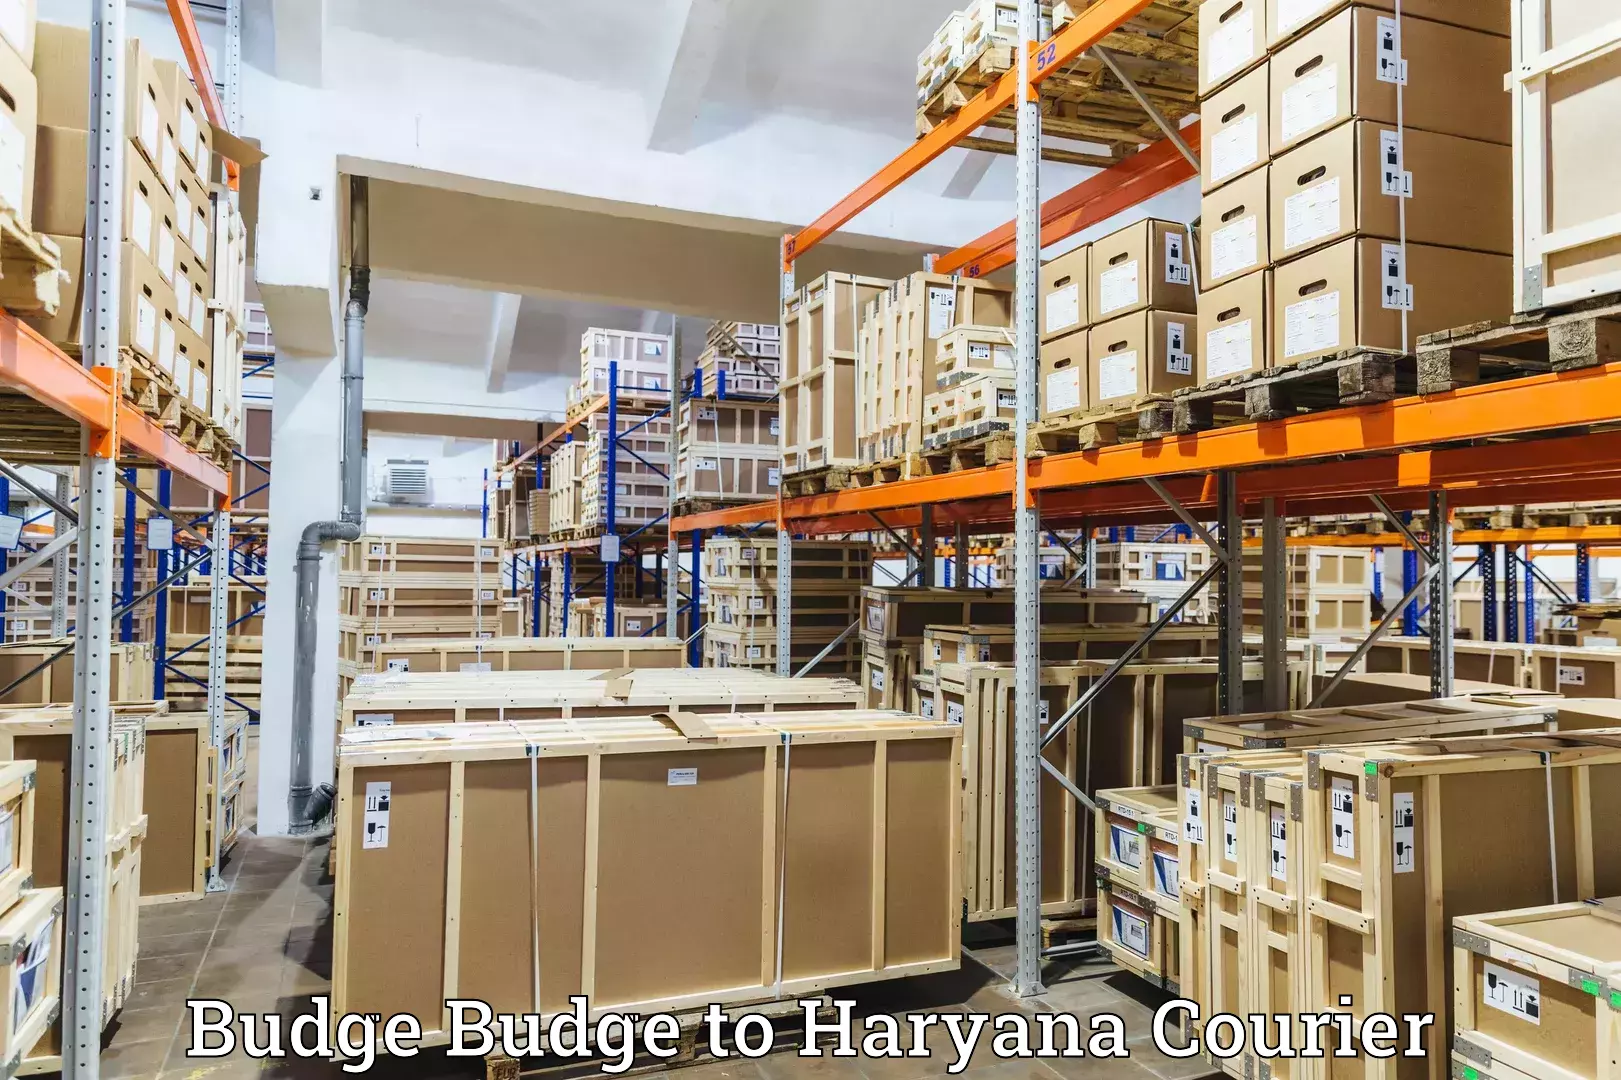 Courier service efficiency Budge Budge to IIIT Sonepat